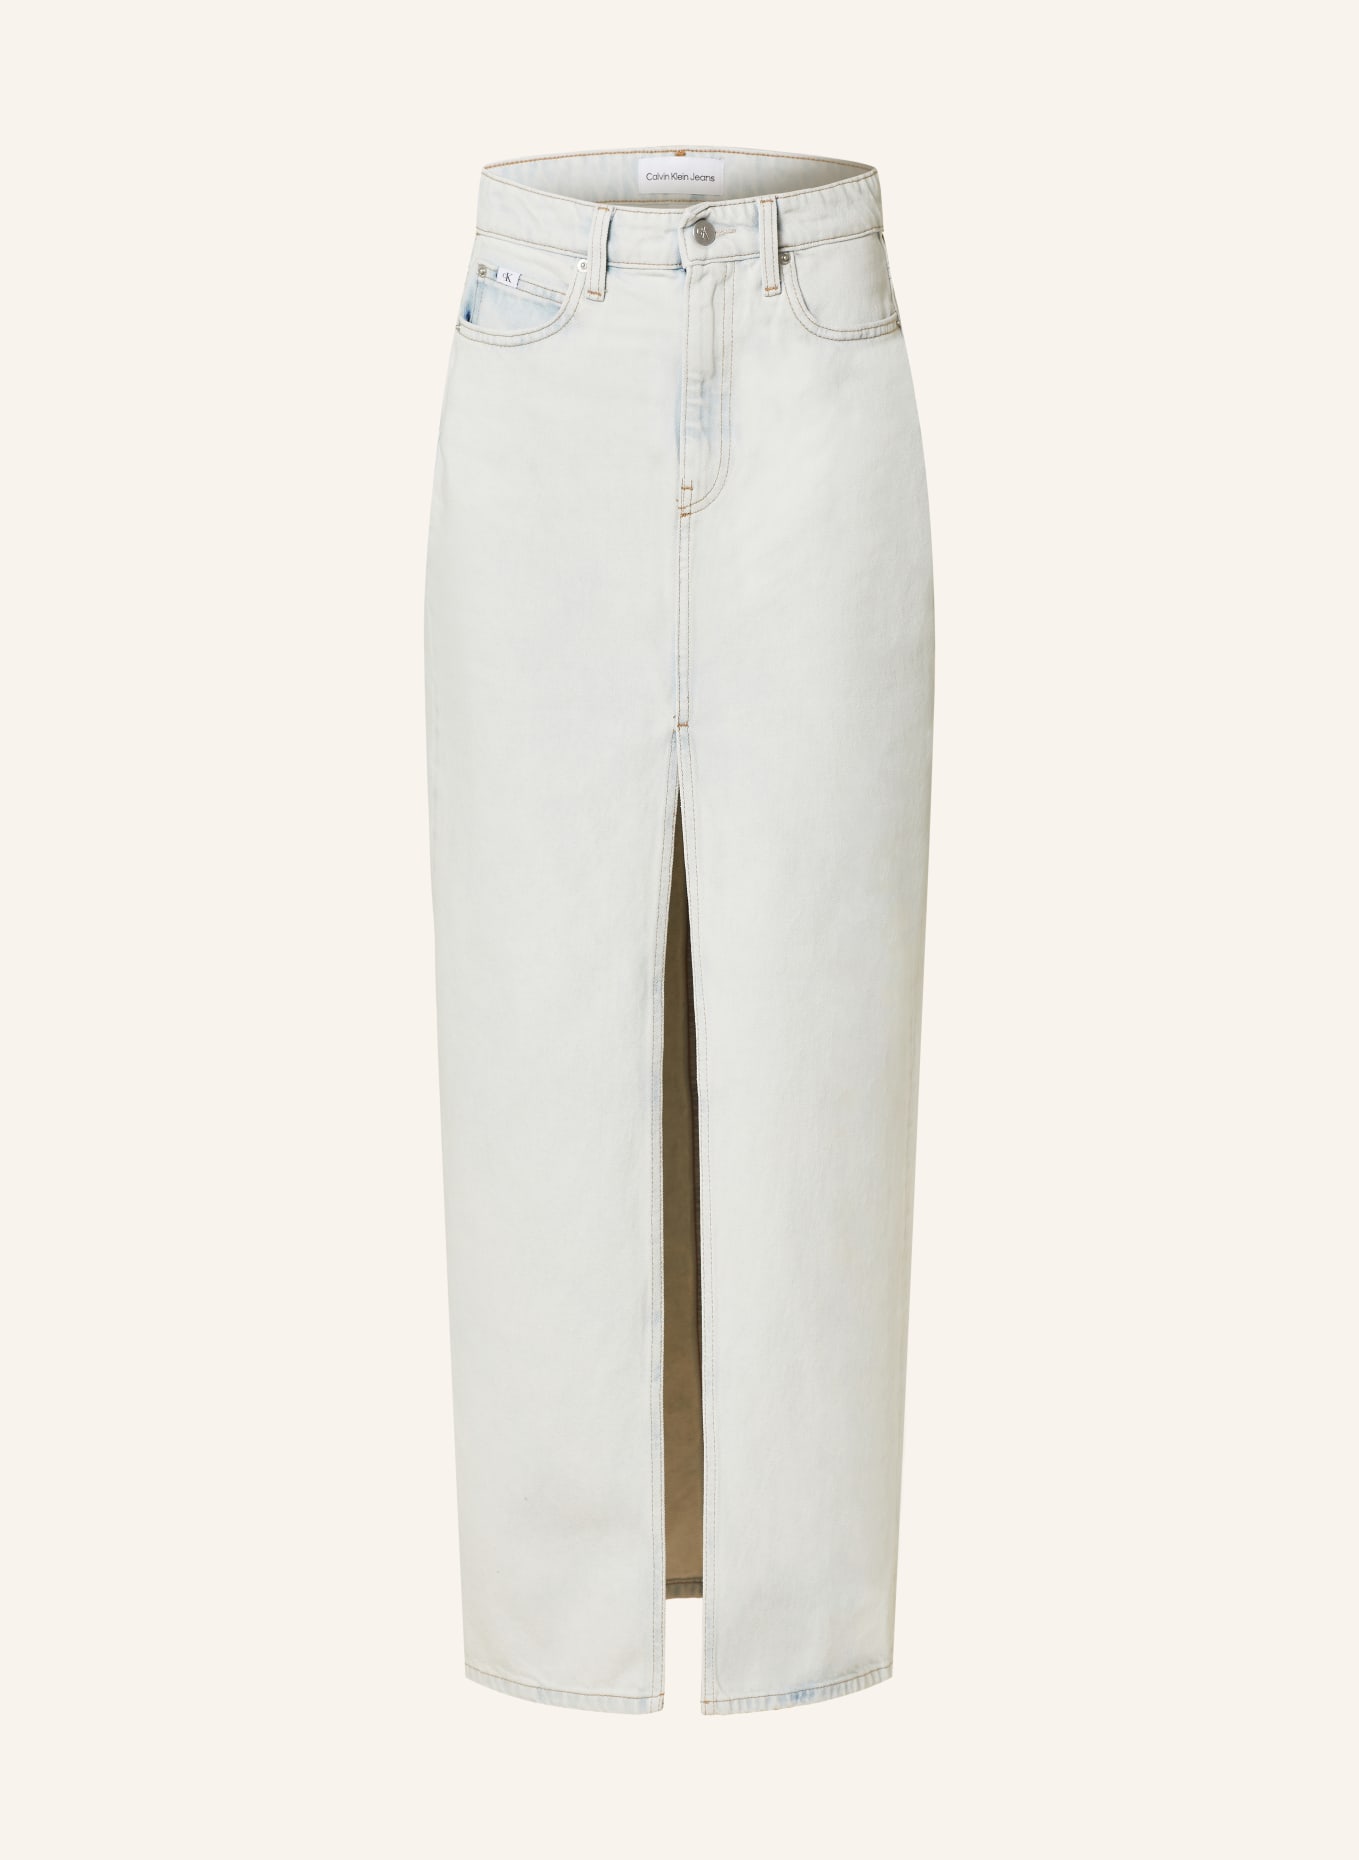 Calvin Klein Jeans Denim skirt, Color: 1AA Denim Light (Image 1)